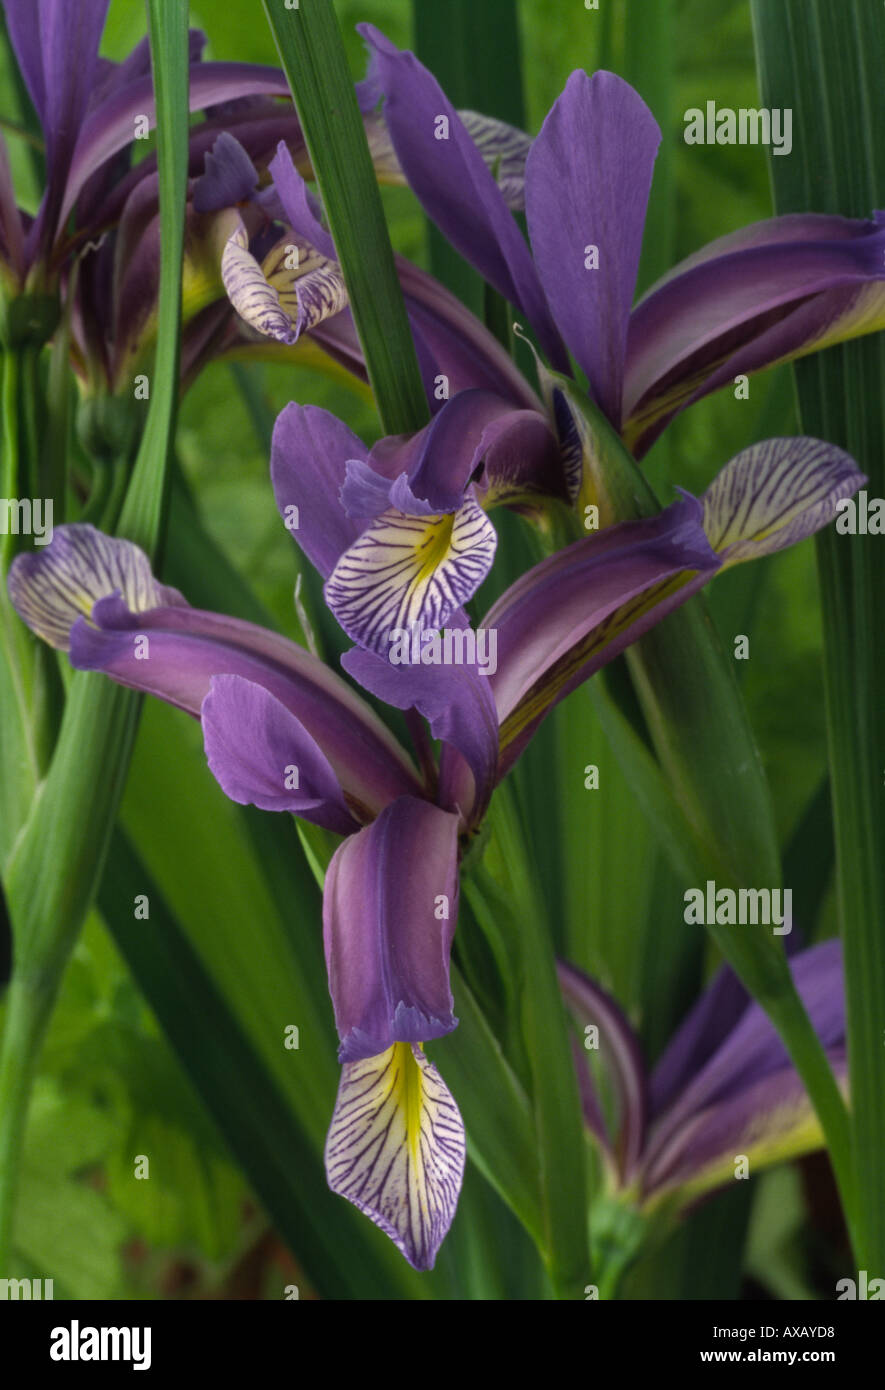 Iris graminea. AGM Beardless Spuria iris. Stock Photo